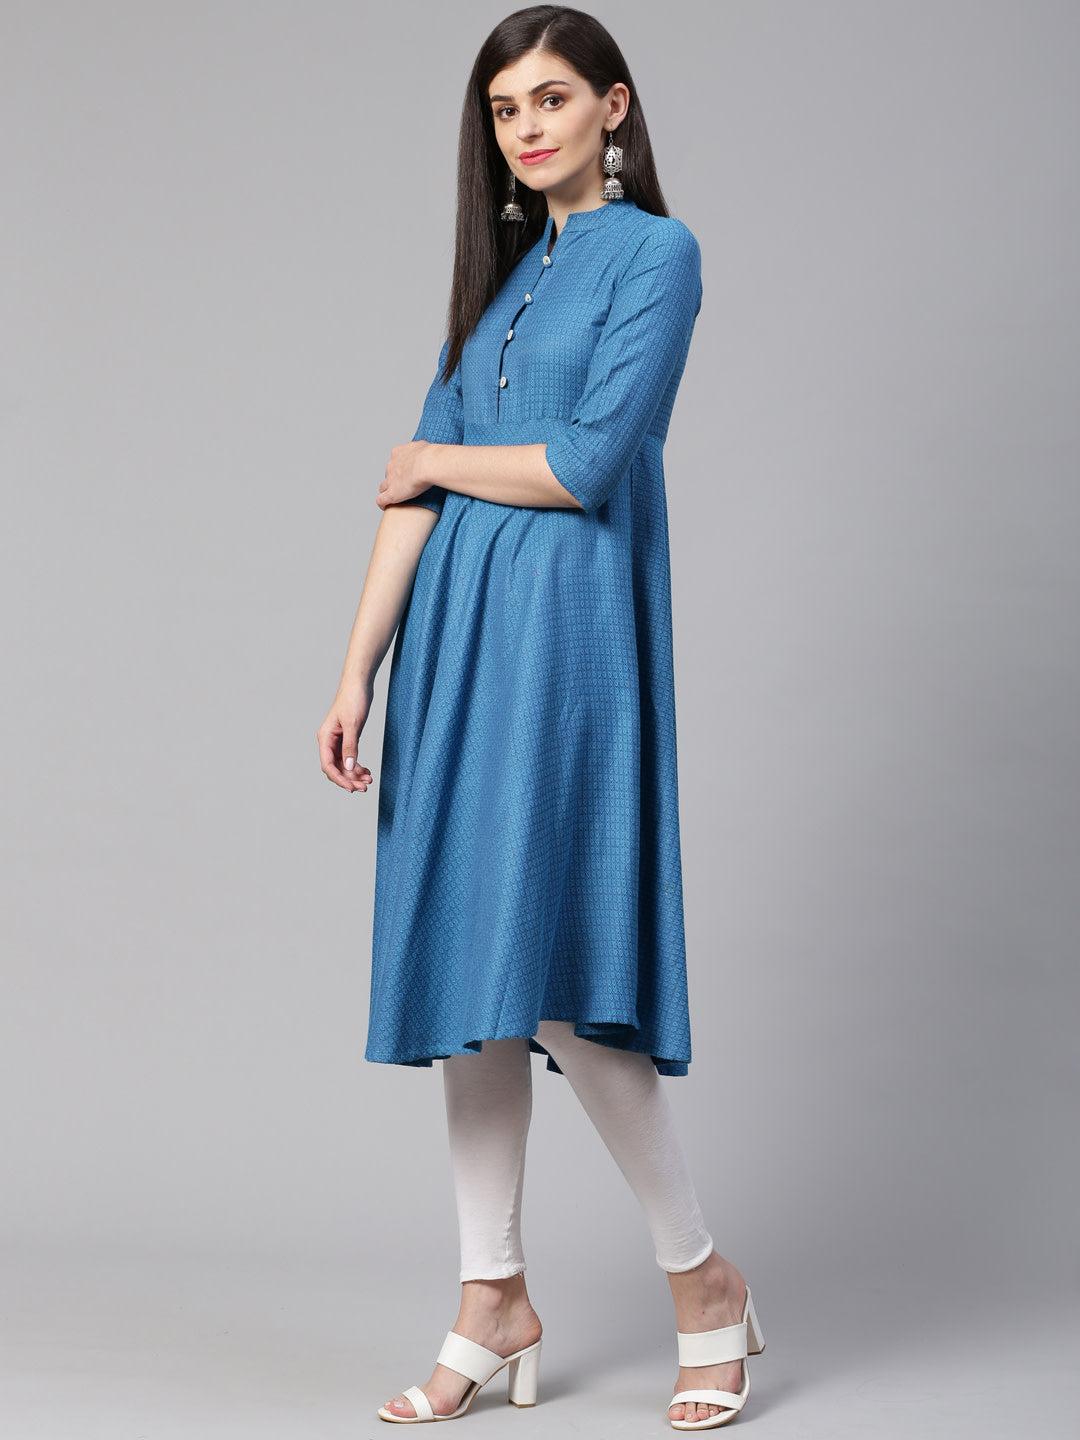 Jompers Women Blue Woven Design Jacquard Weave A-Line Kurta - Distacart